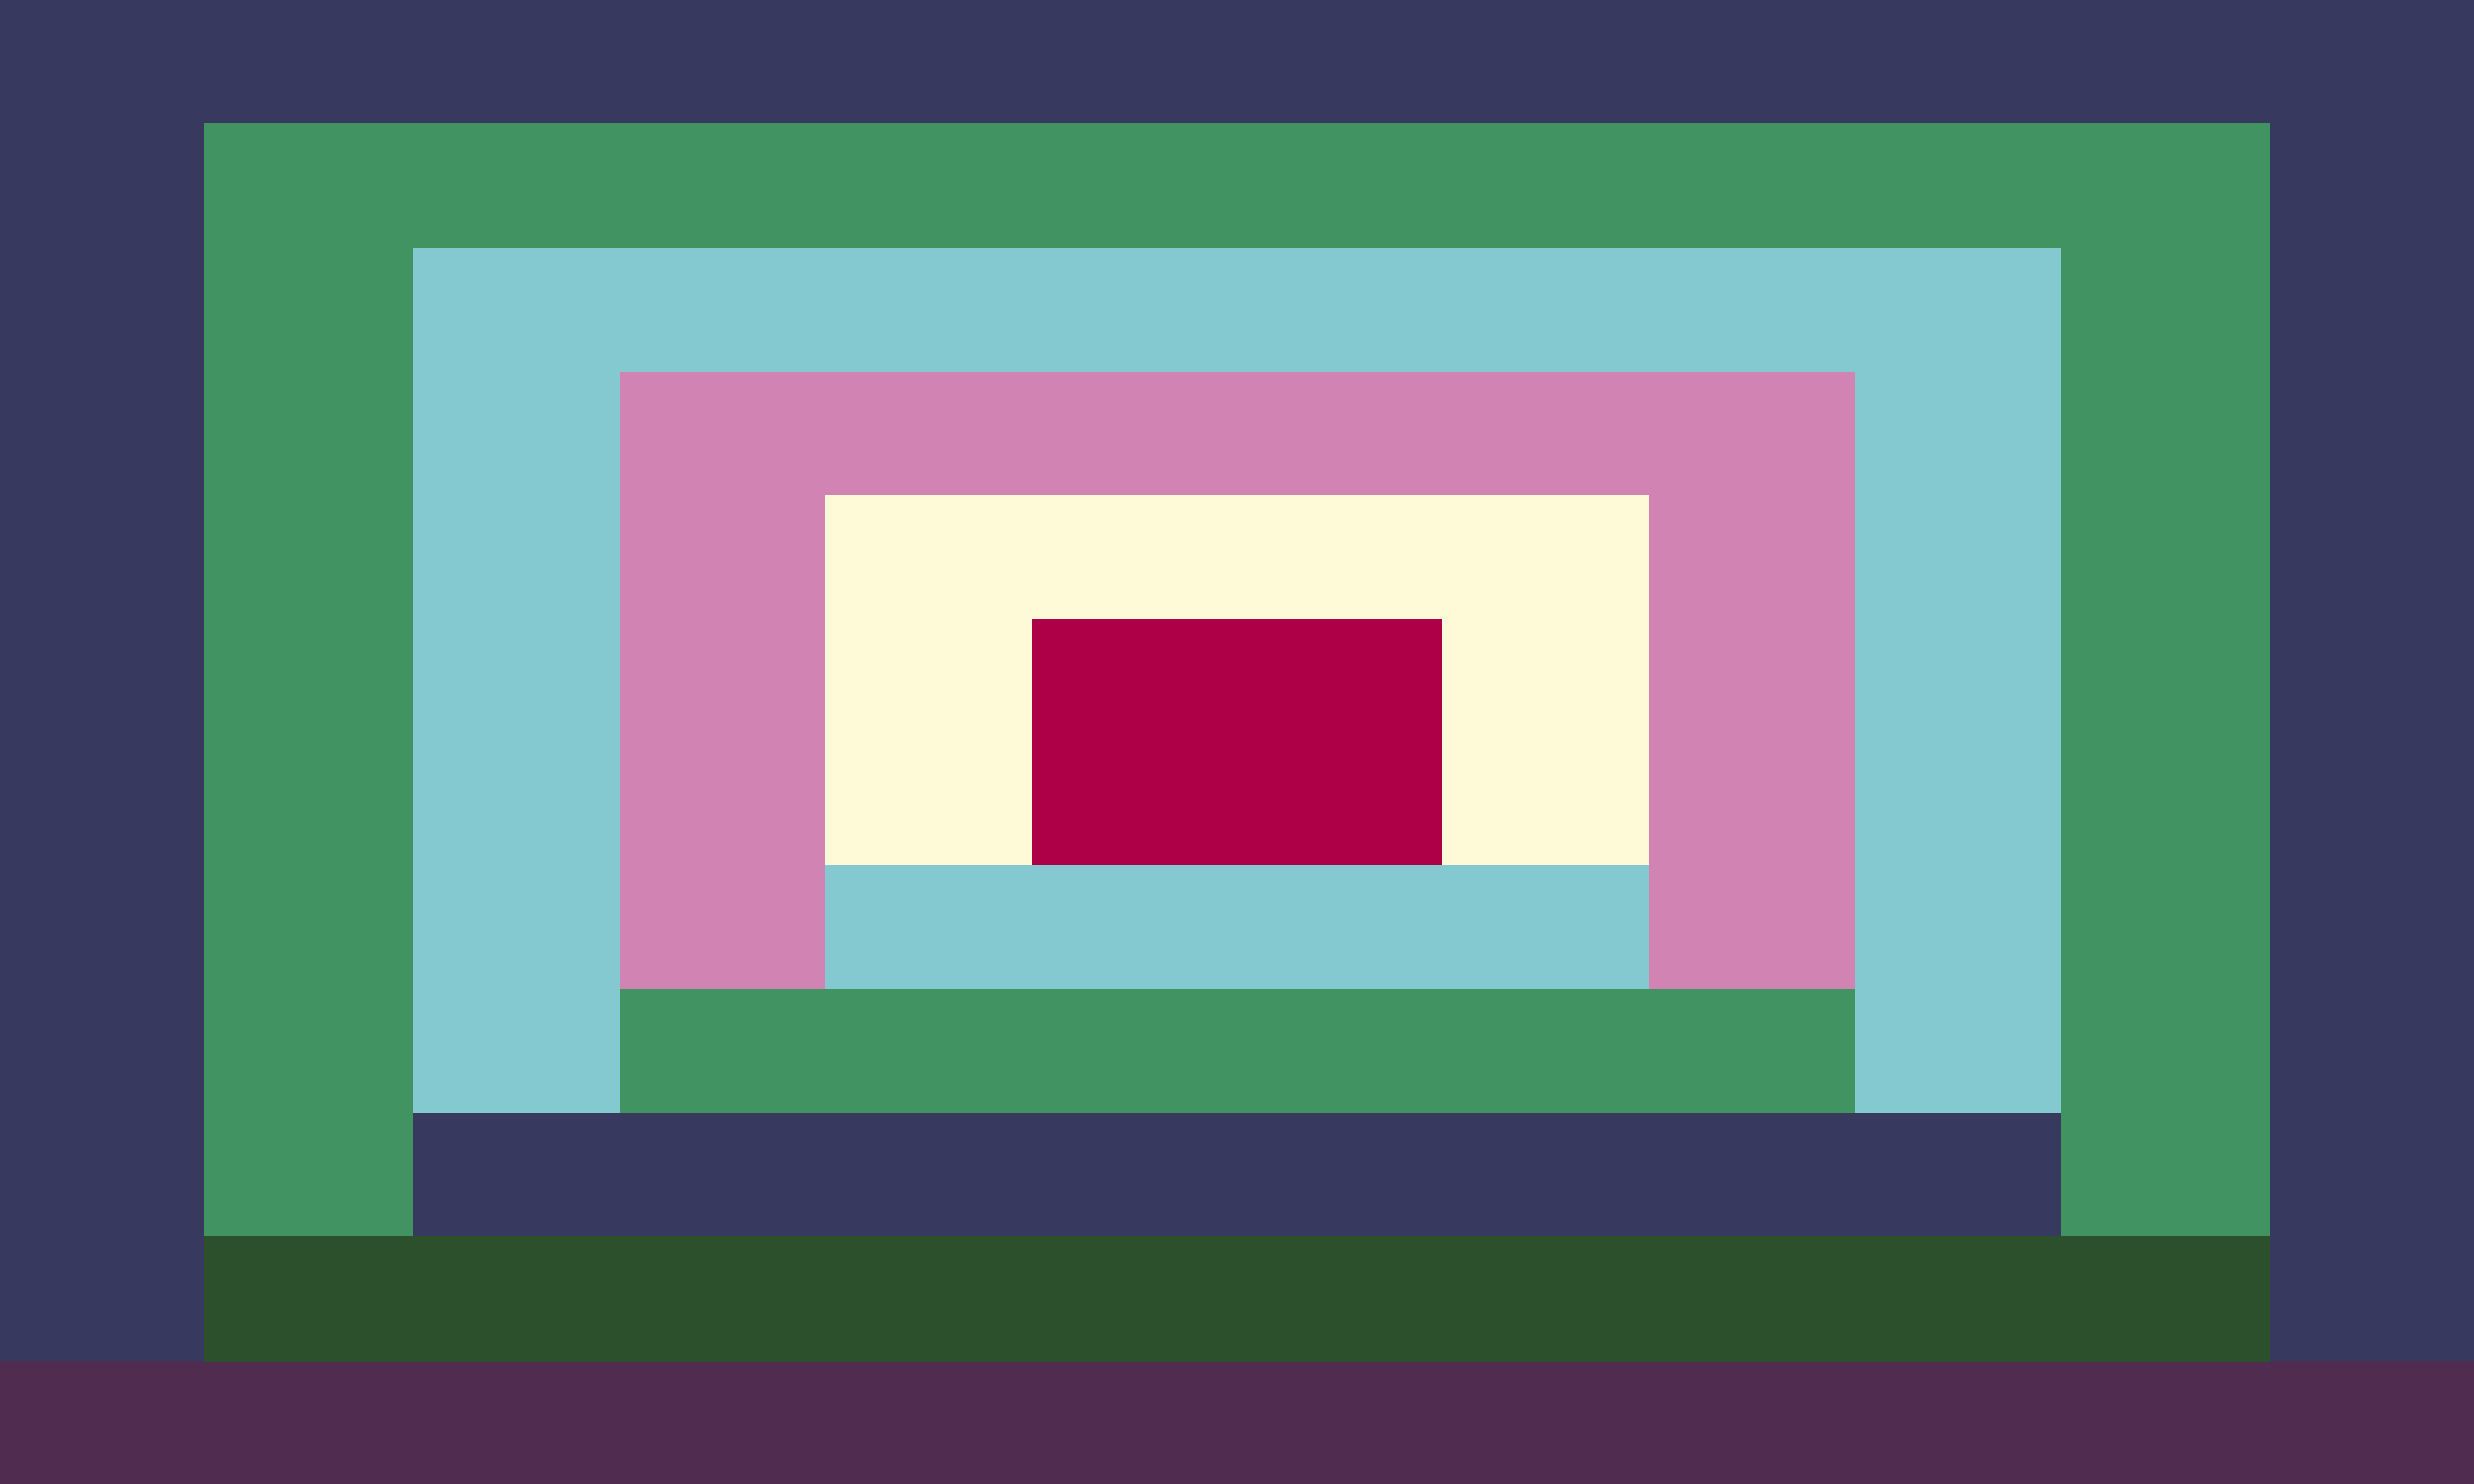 Bandeira xênica feita por Hatch. Ela é composta por vários quadrados em diversas cores, basicamente.